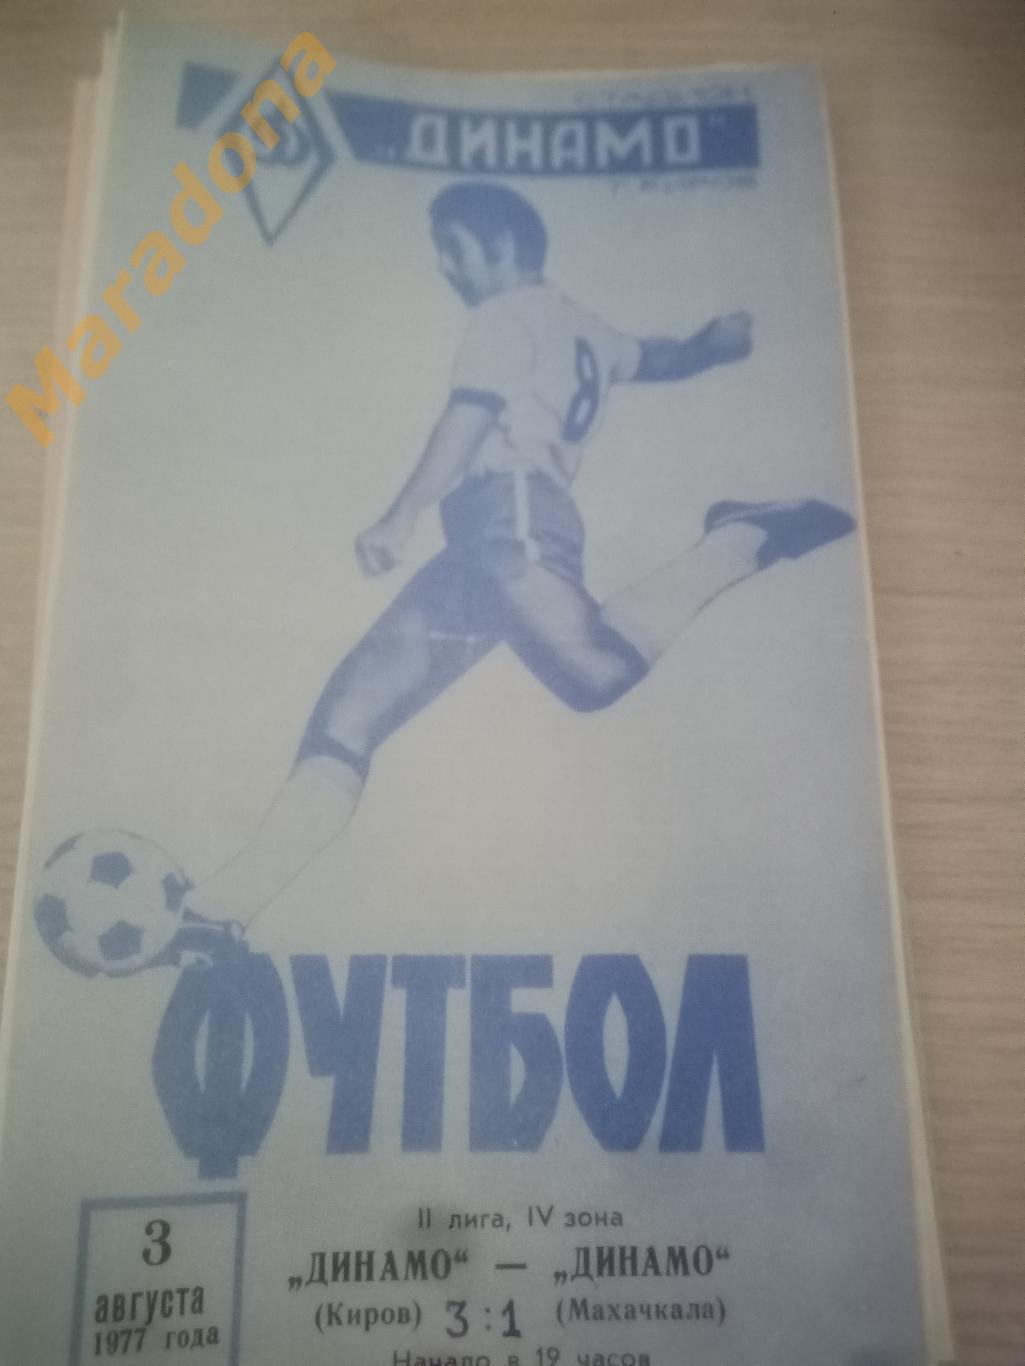 Динамо Киров - Динамо Махачкала 1977